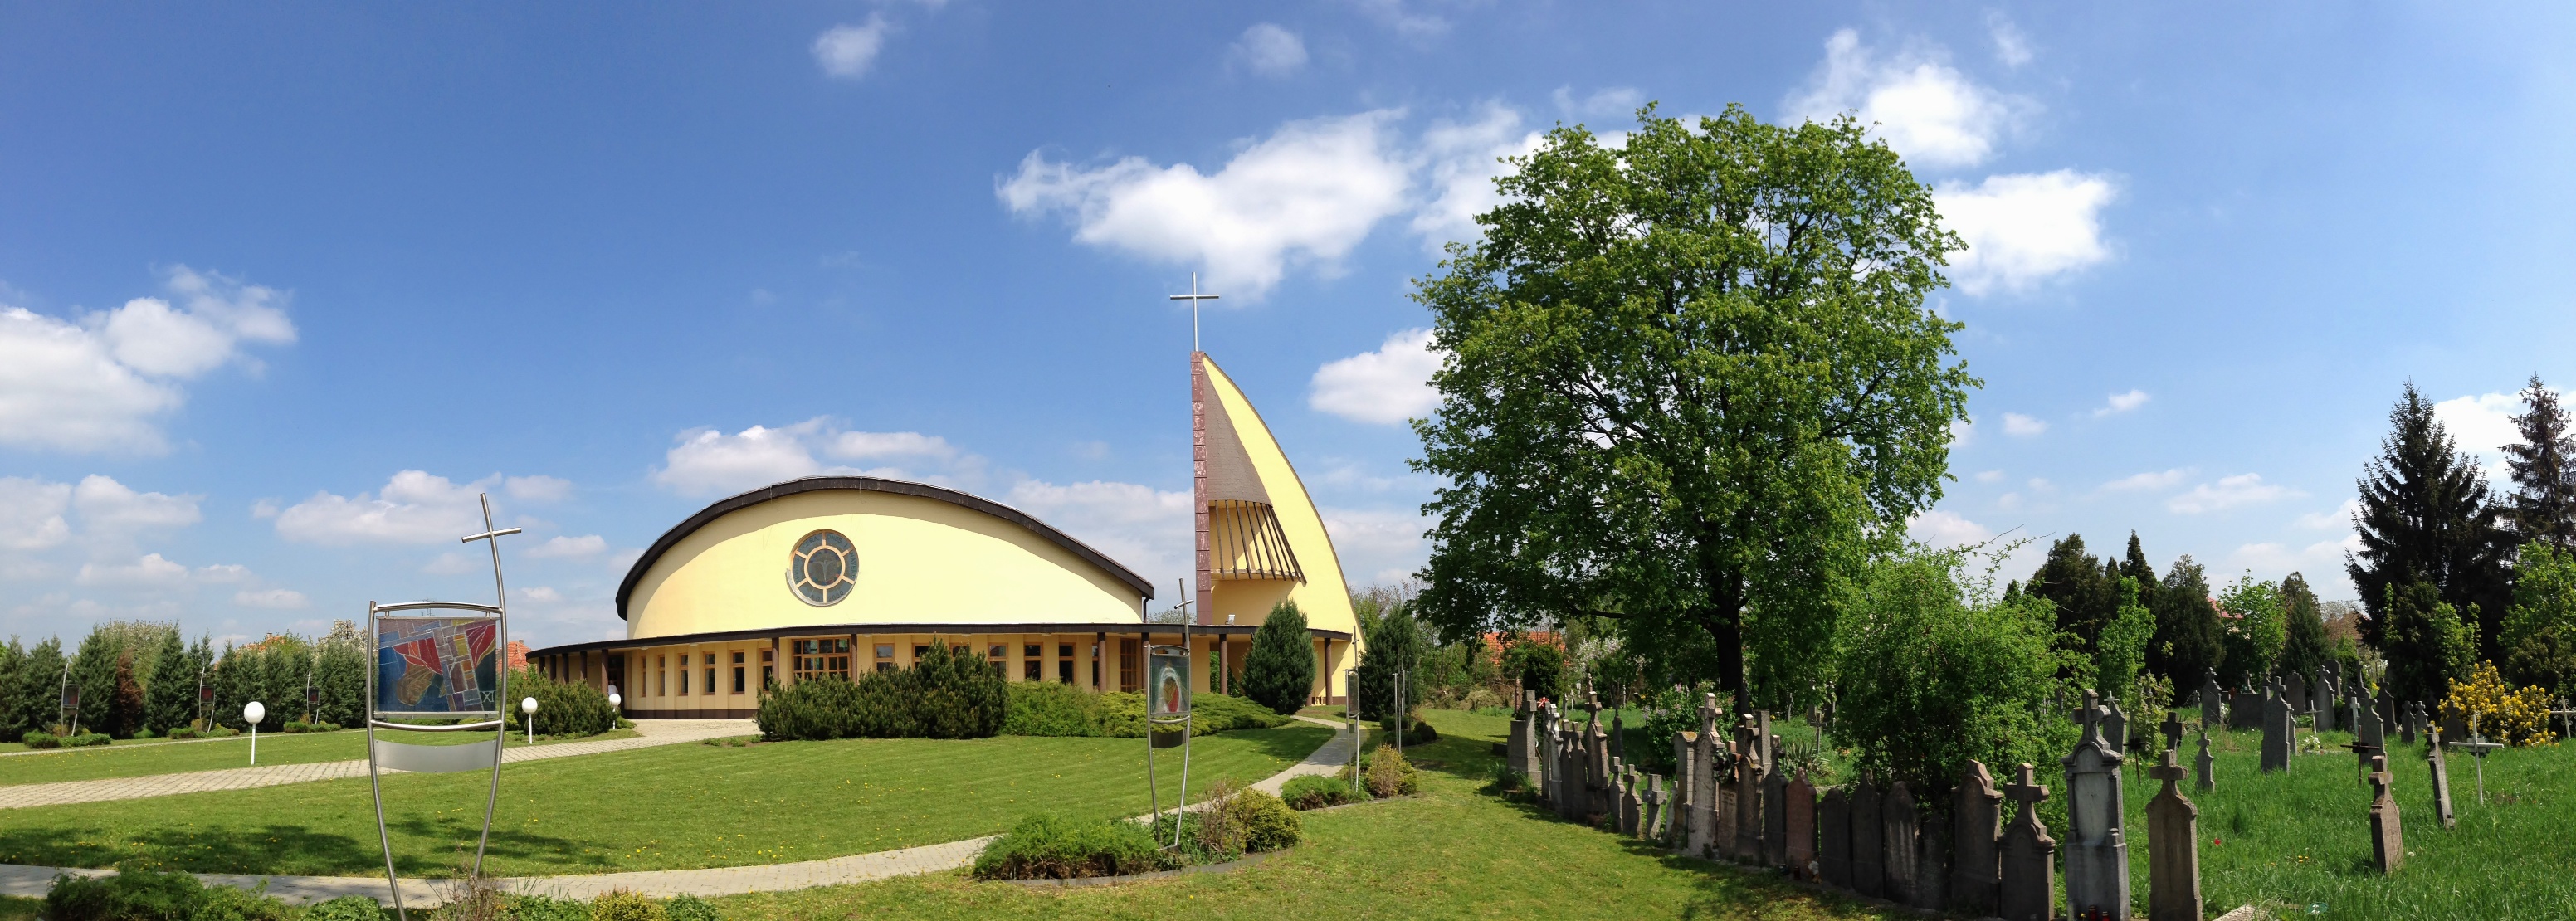 Filiálny kostol Božieho milosrdenstva v Kostolnom Seku - 28.4.2013, 11:55 h, exteriér, južný pohľad